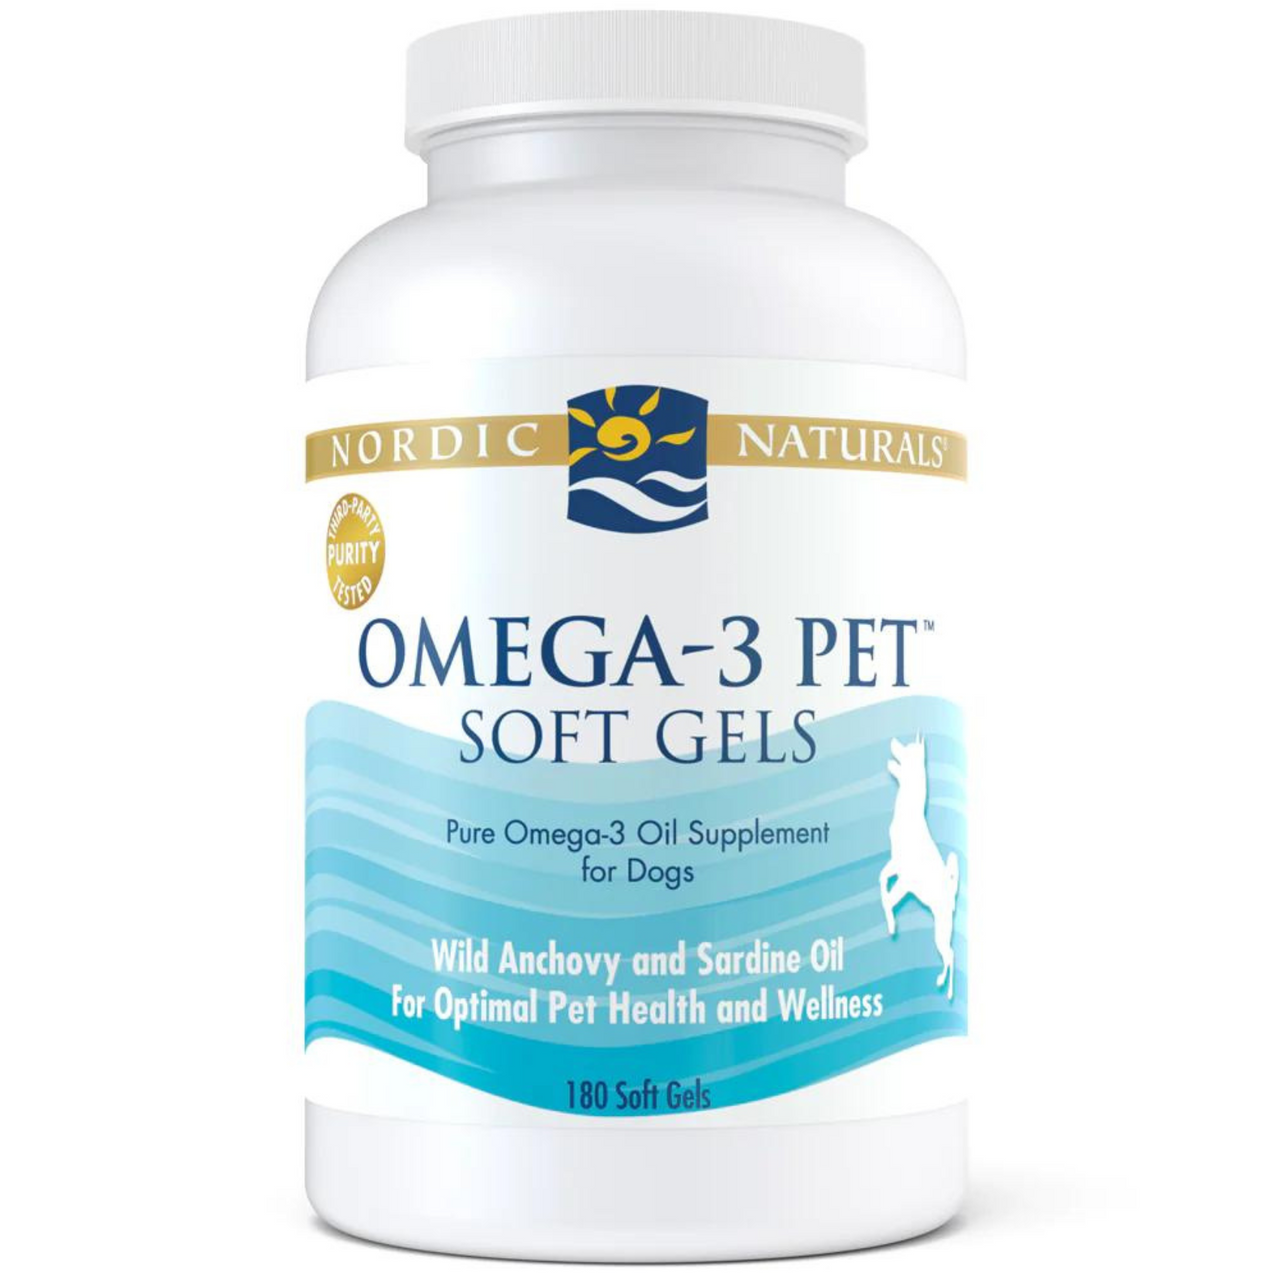 Omega 3 Pet Soft Gels